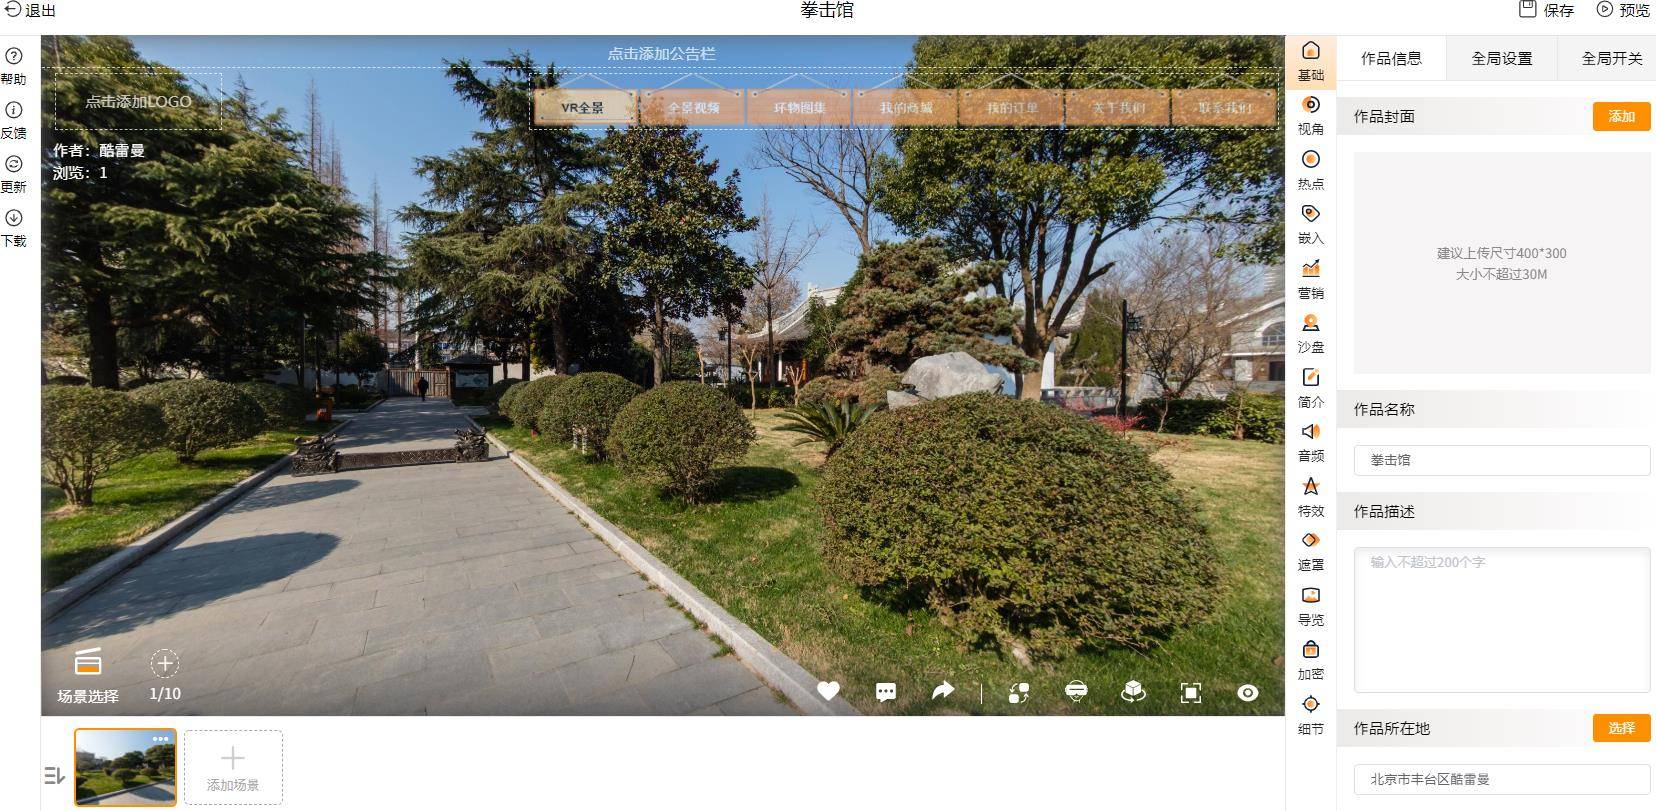 北京同创蓝天云科技旗下的酷雷曼VR系统都可以应用哪些地方